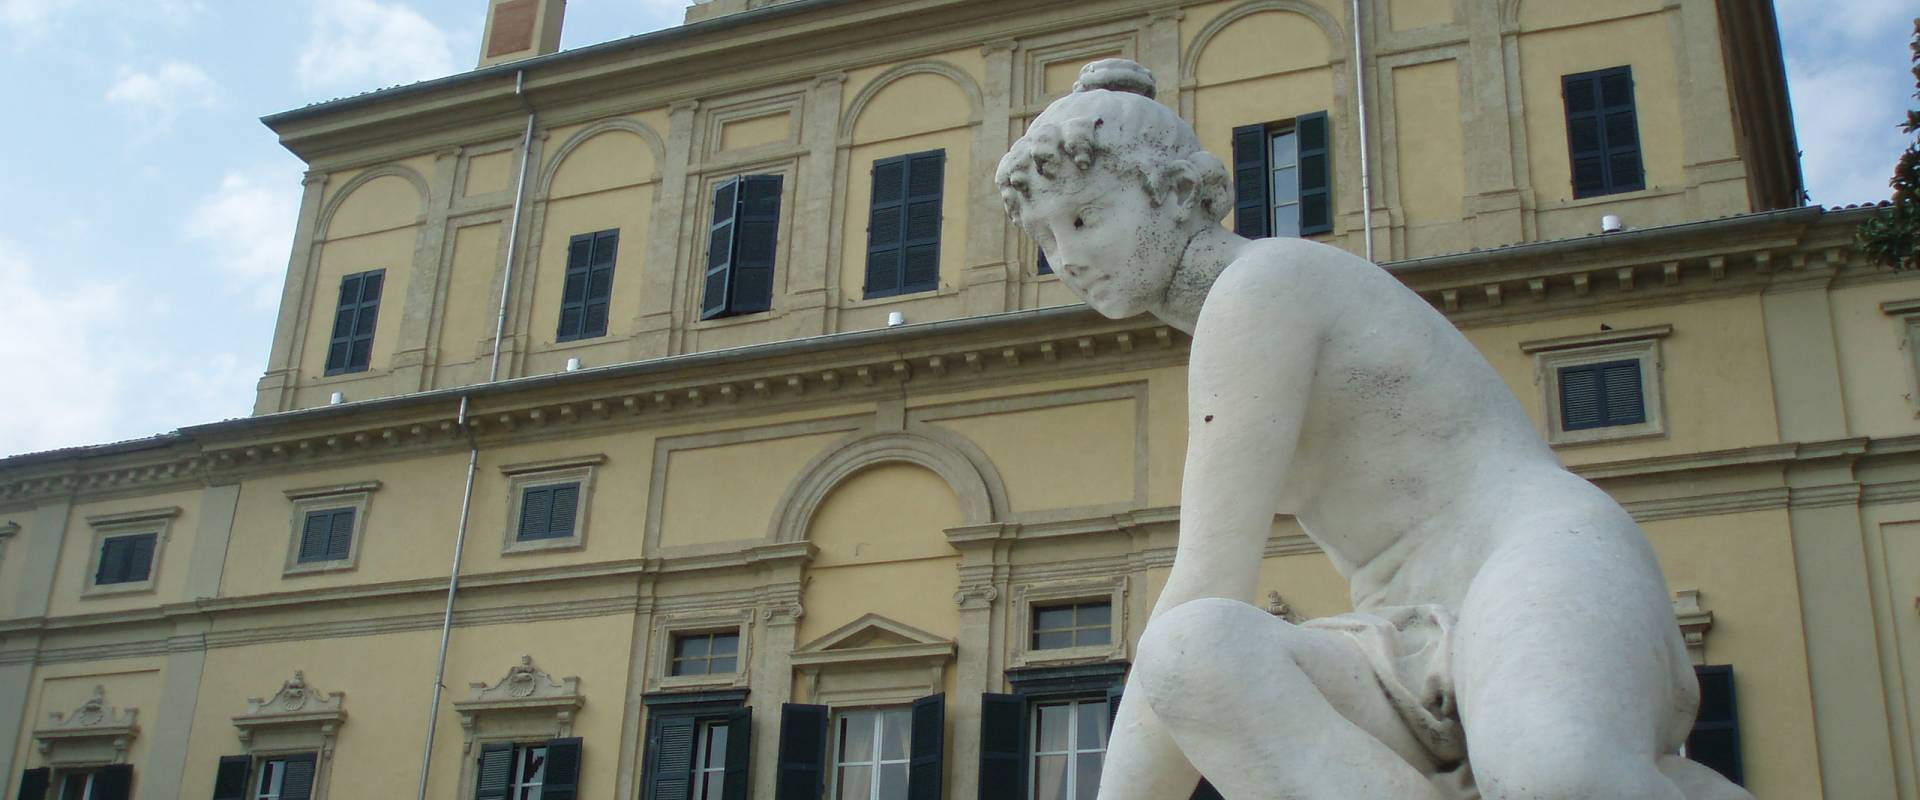 Palazzo Ducale di Parma con Statua photo by Marcogiulio